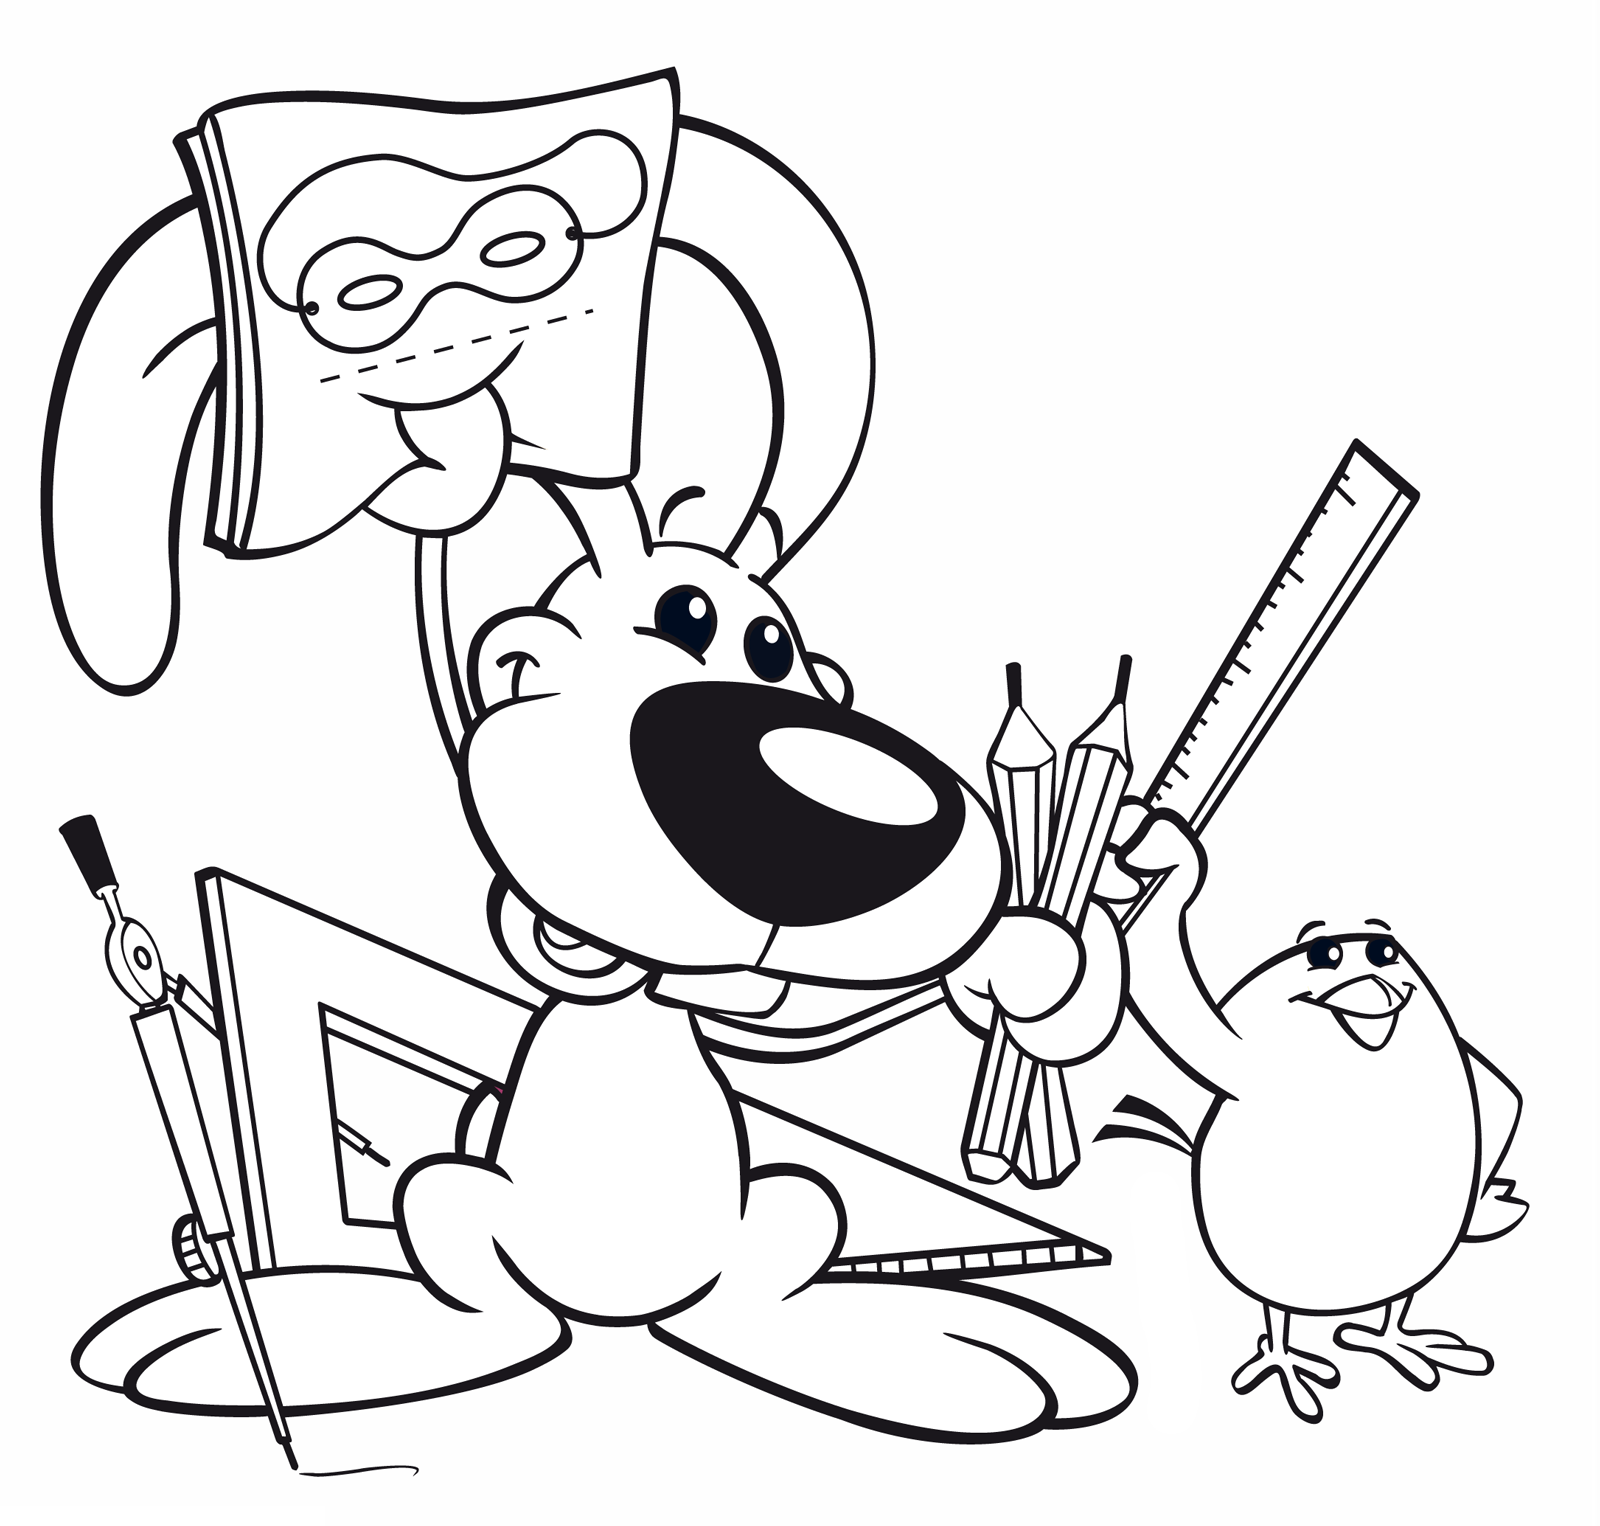 Cuccioli - Cilindro e Senzanome disegnano maschere di carnevale